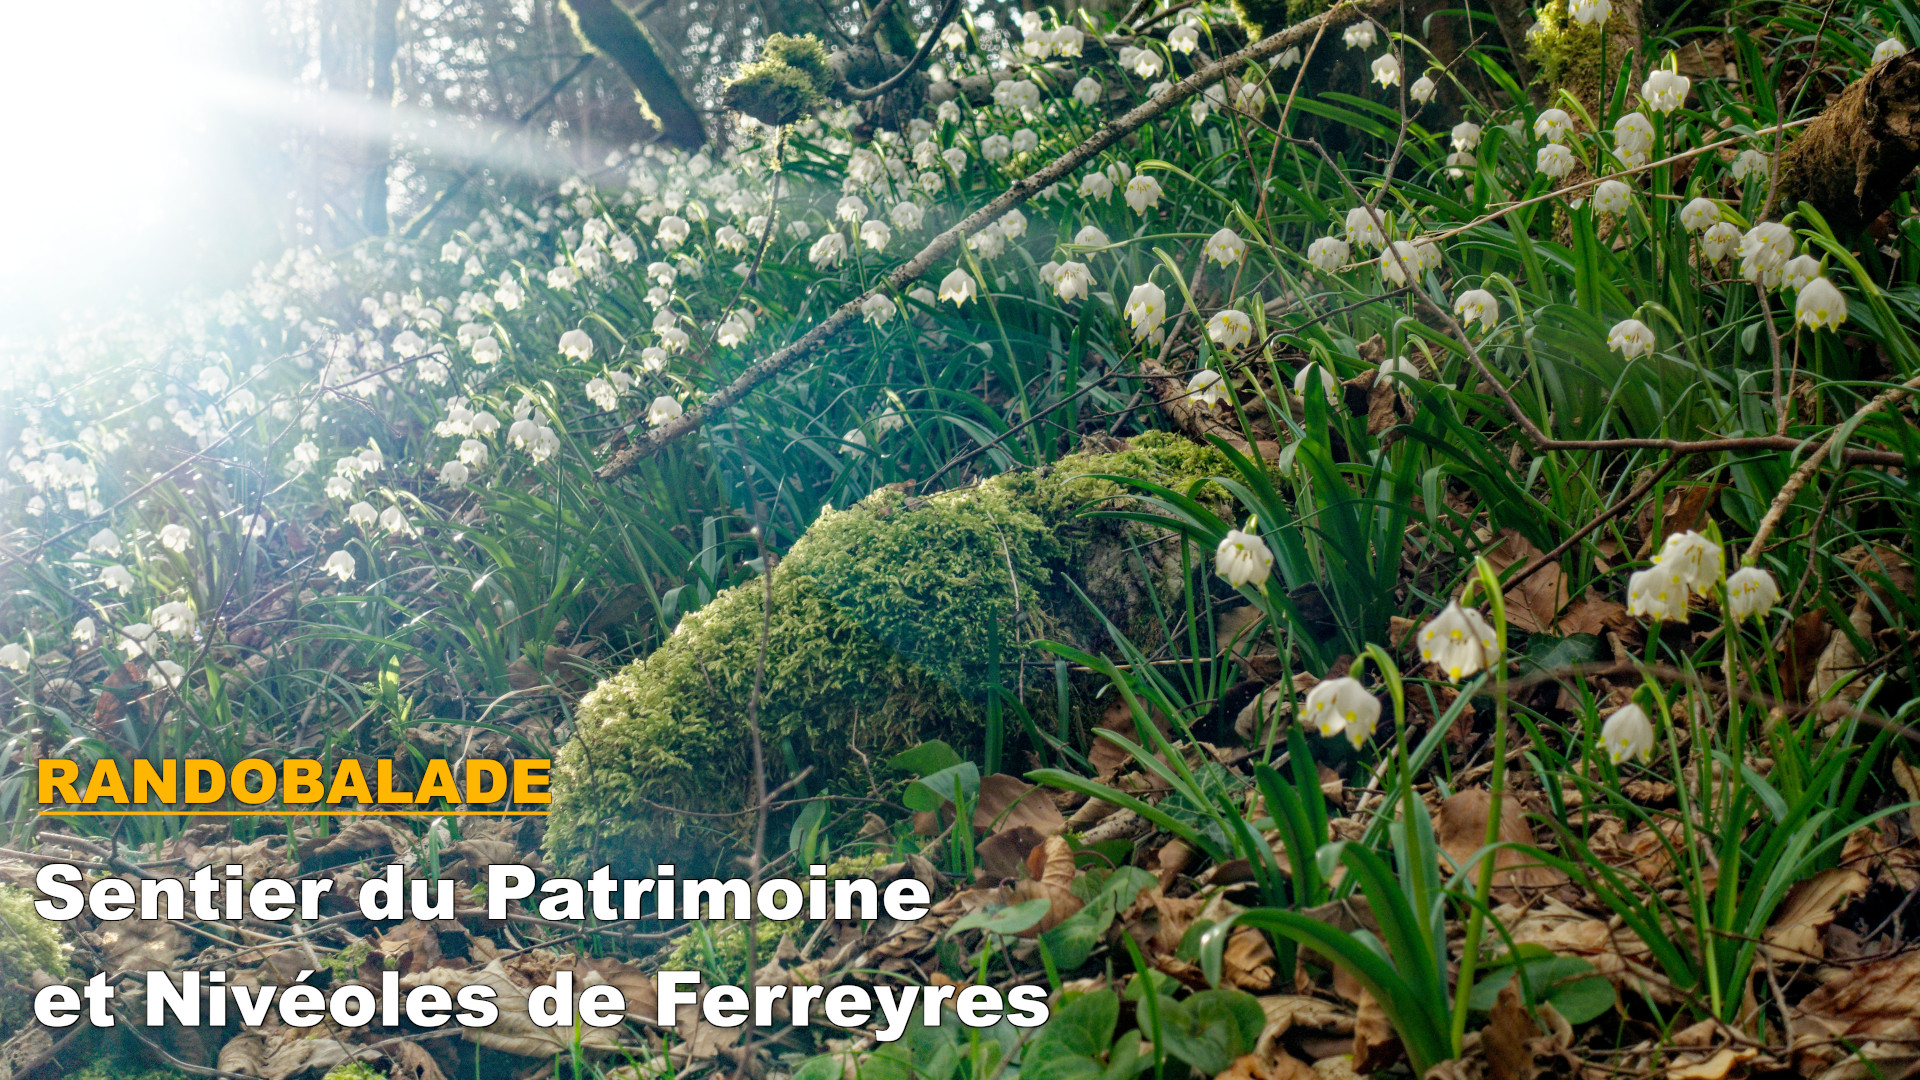 Randobalade: Sentier du Patrimoine et Nivéoles de Ferreyres